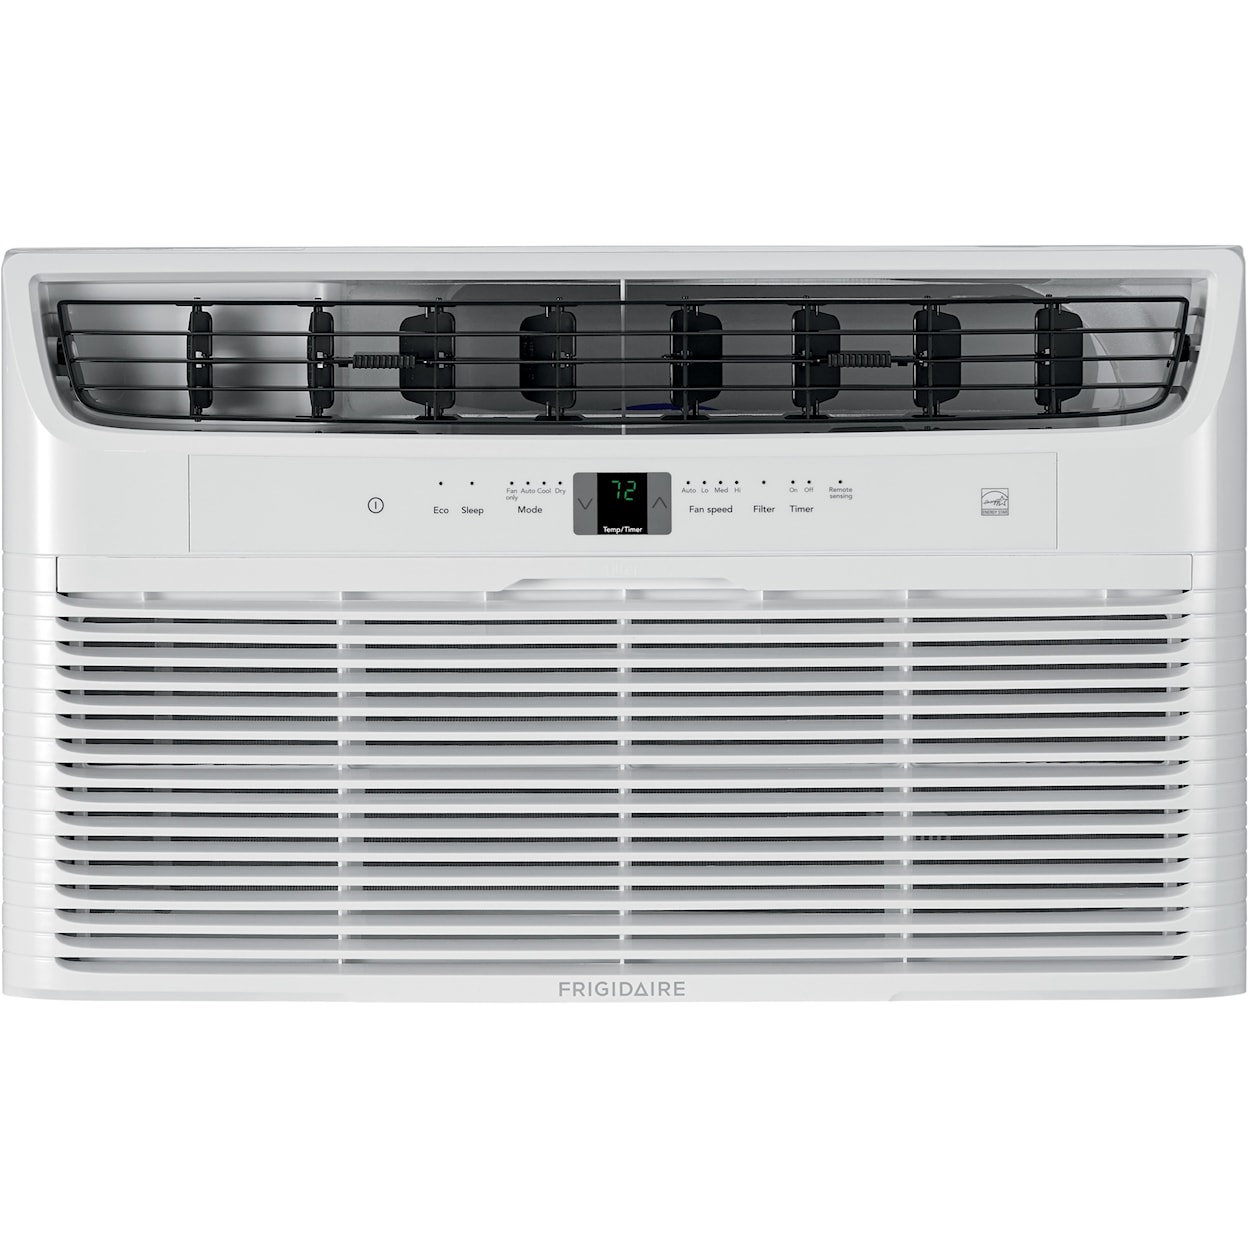 Frigidaire Air Conditioners 8,000 BTU Built-In Room Air Conditioner